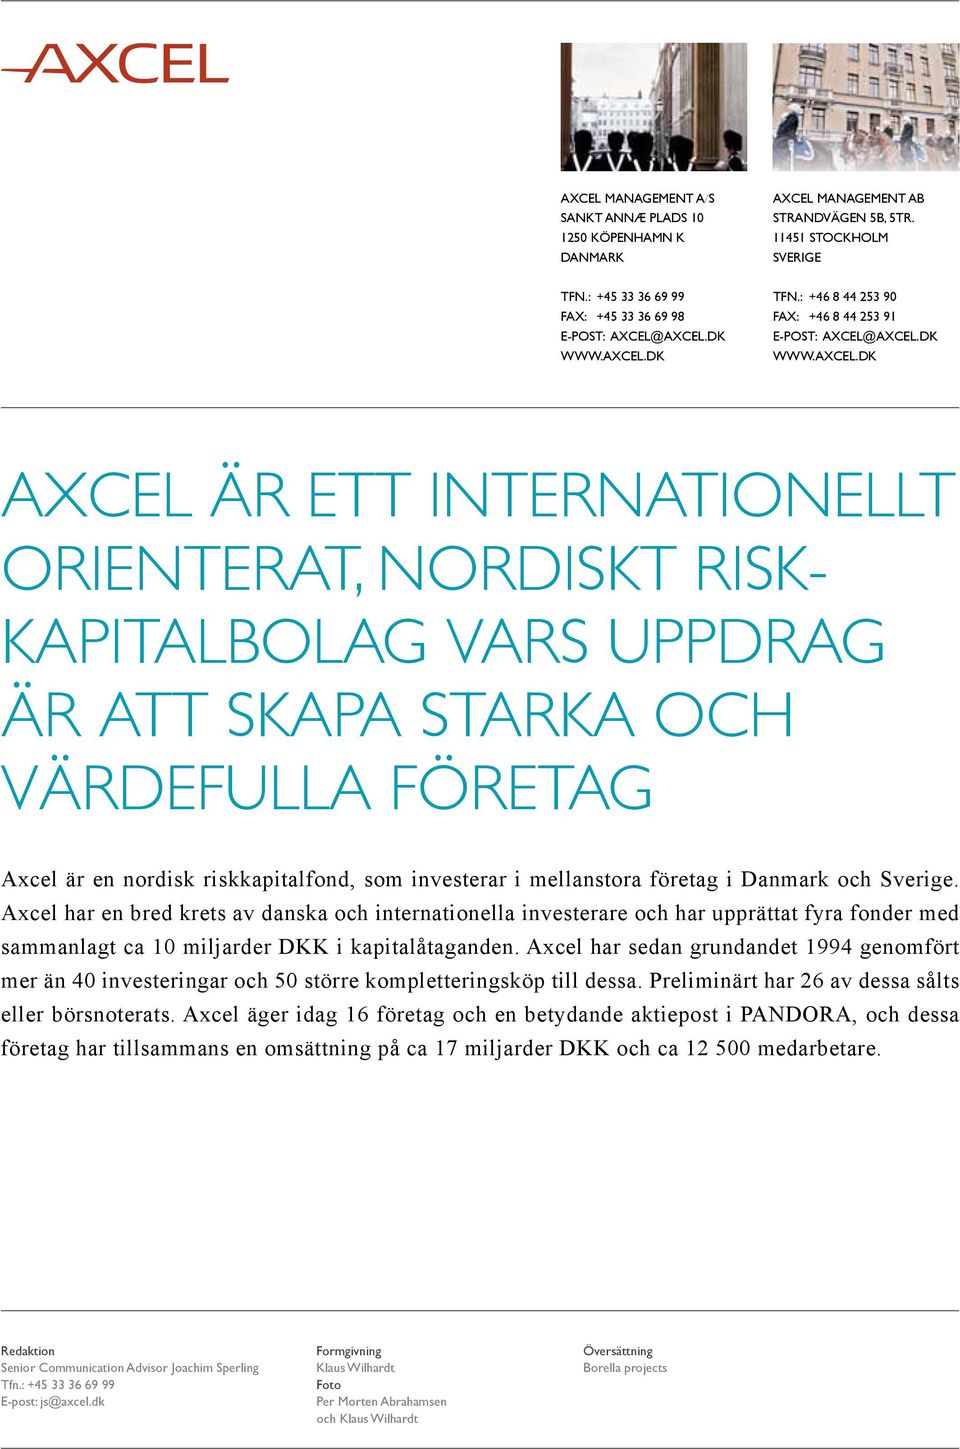 Axcel har en bred krets av danska och internationella investerare och har upprättat fyra fonder med sammanlagt ca 10 miljarder DKK i kapitalåtaganden.